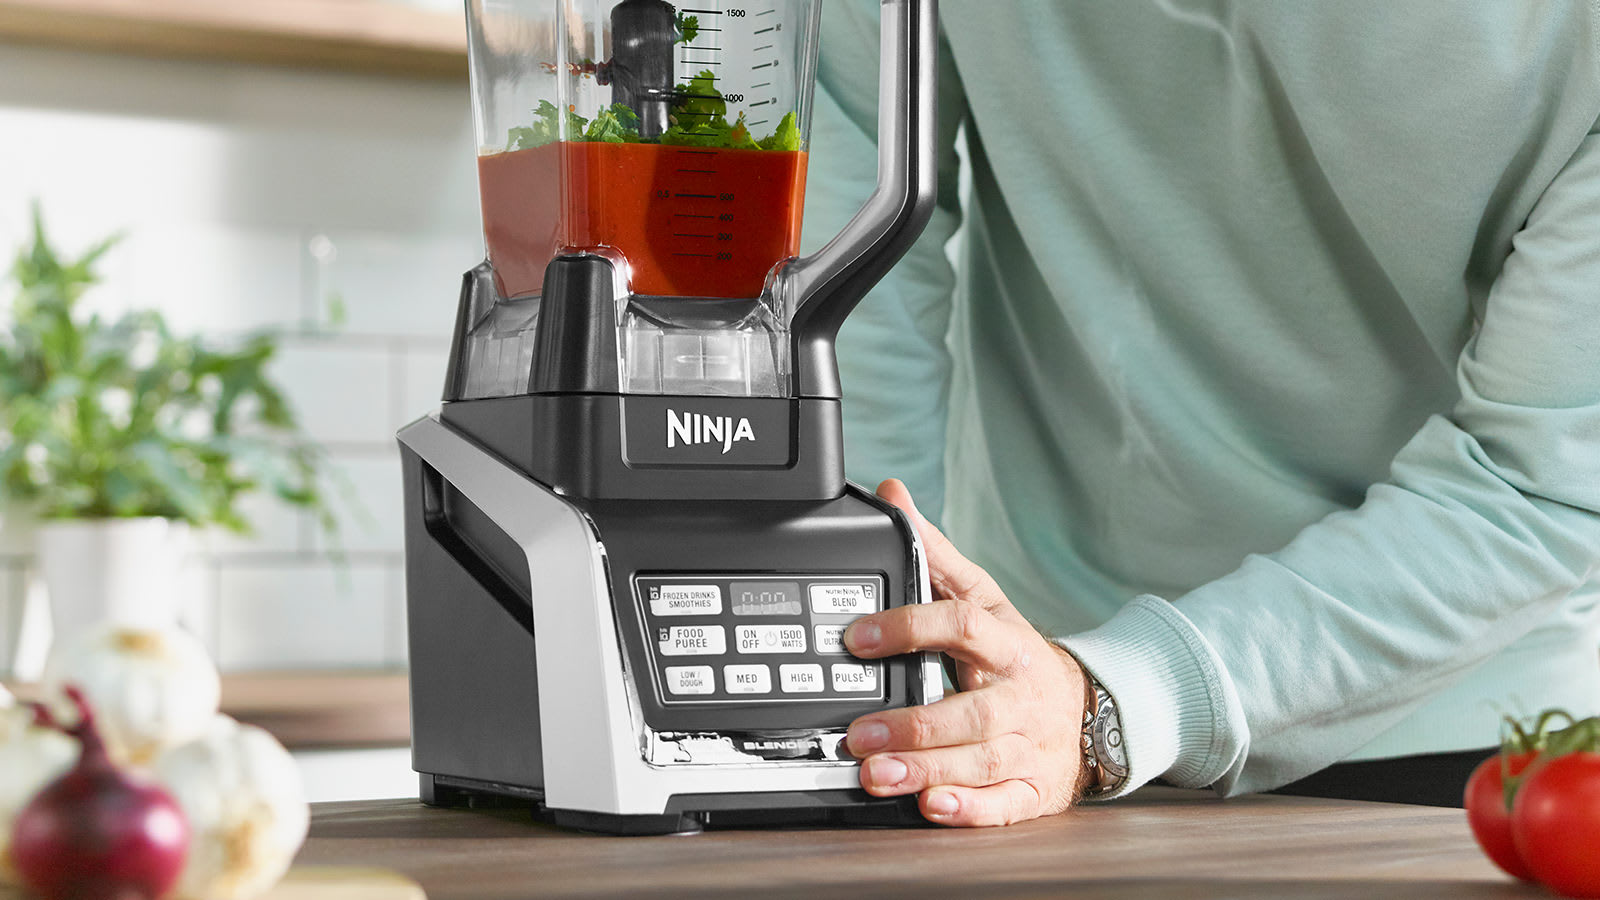 Nutri Ninja Blender/Food Processor With Auto-Iq 1500W in Ojo